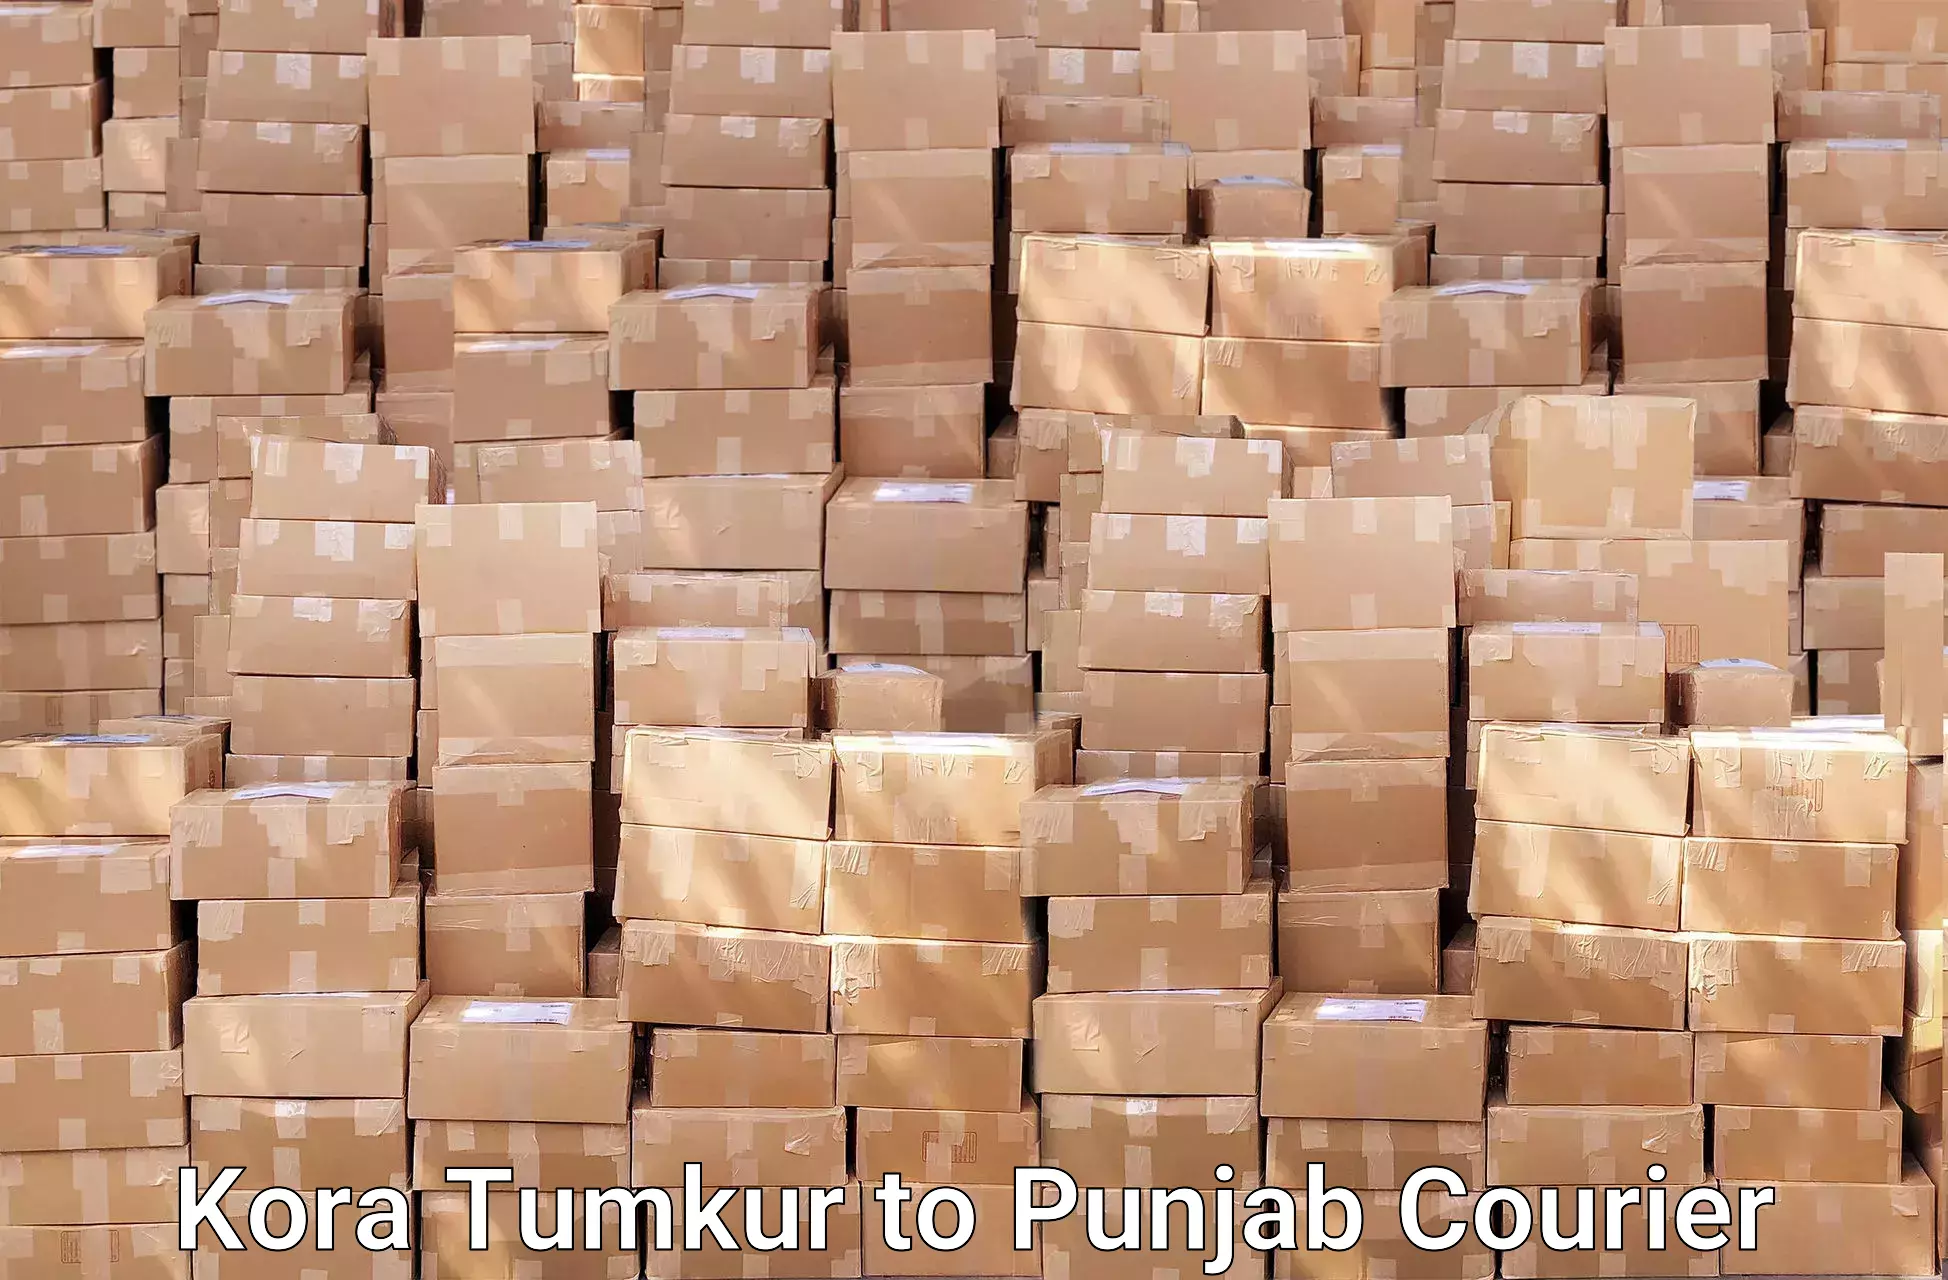 Affordable moving services Kora Tumkur to Punjab